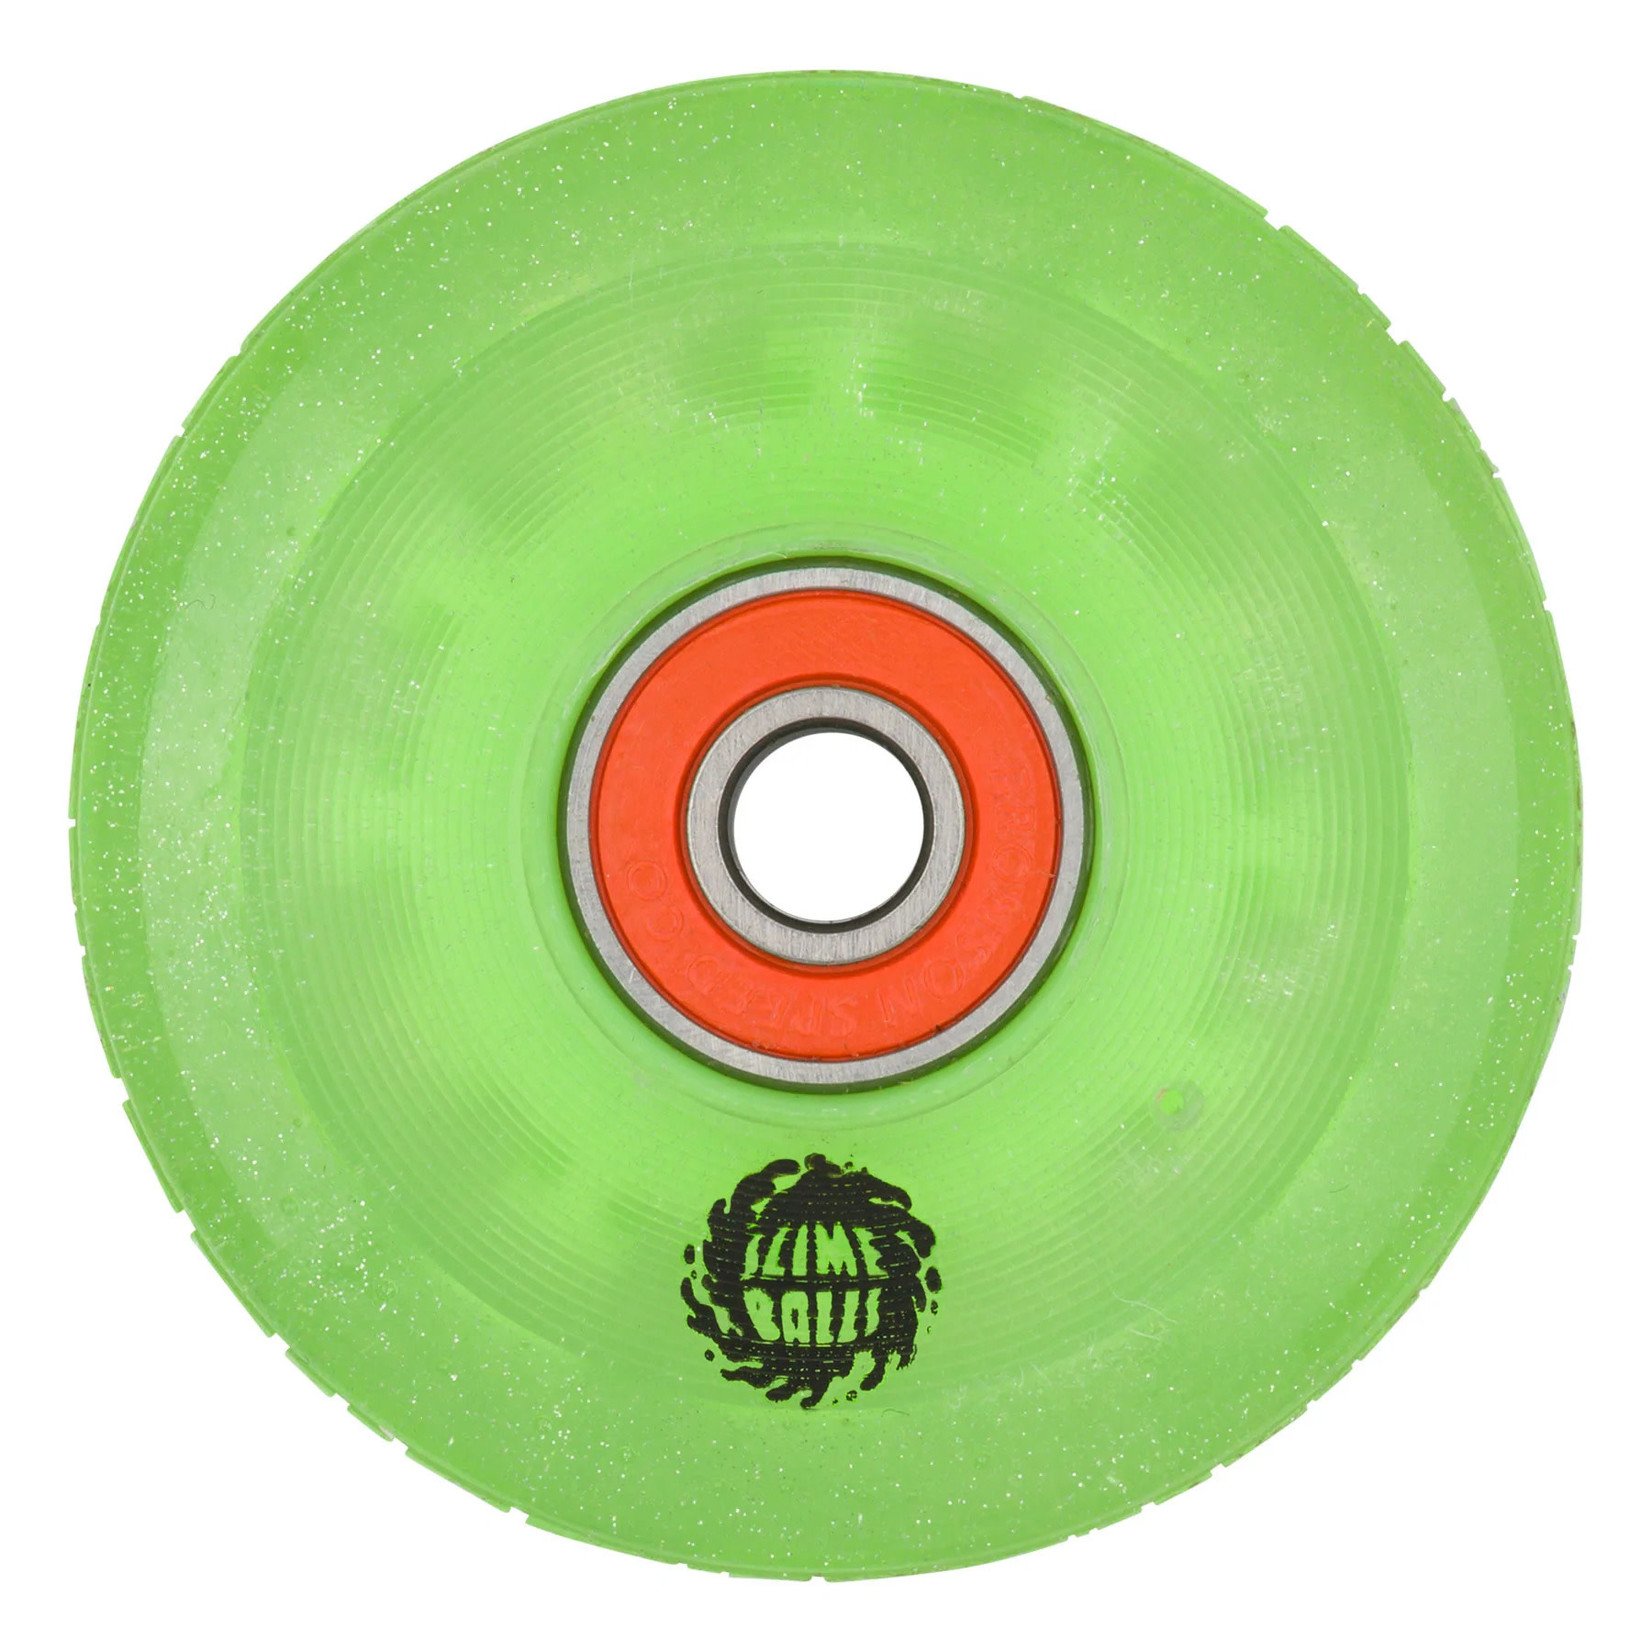 Slime Balls 60mm 78a Light Ups OG Slime Green Glitter Slime Balls Wheels